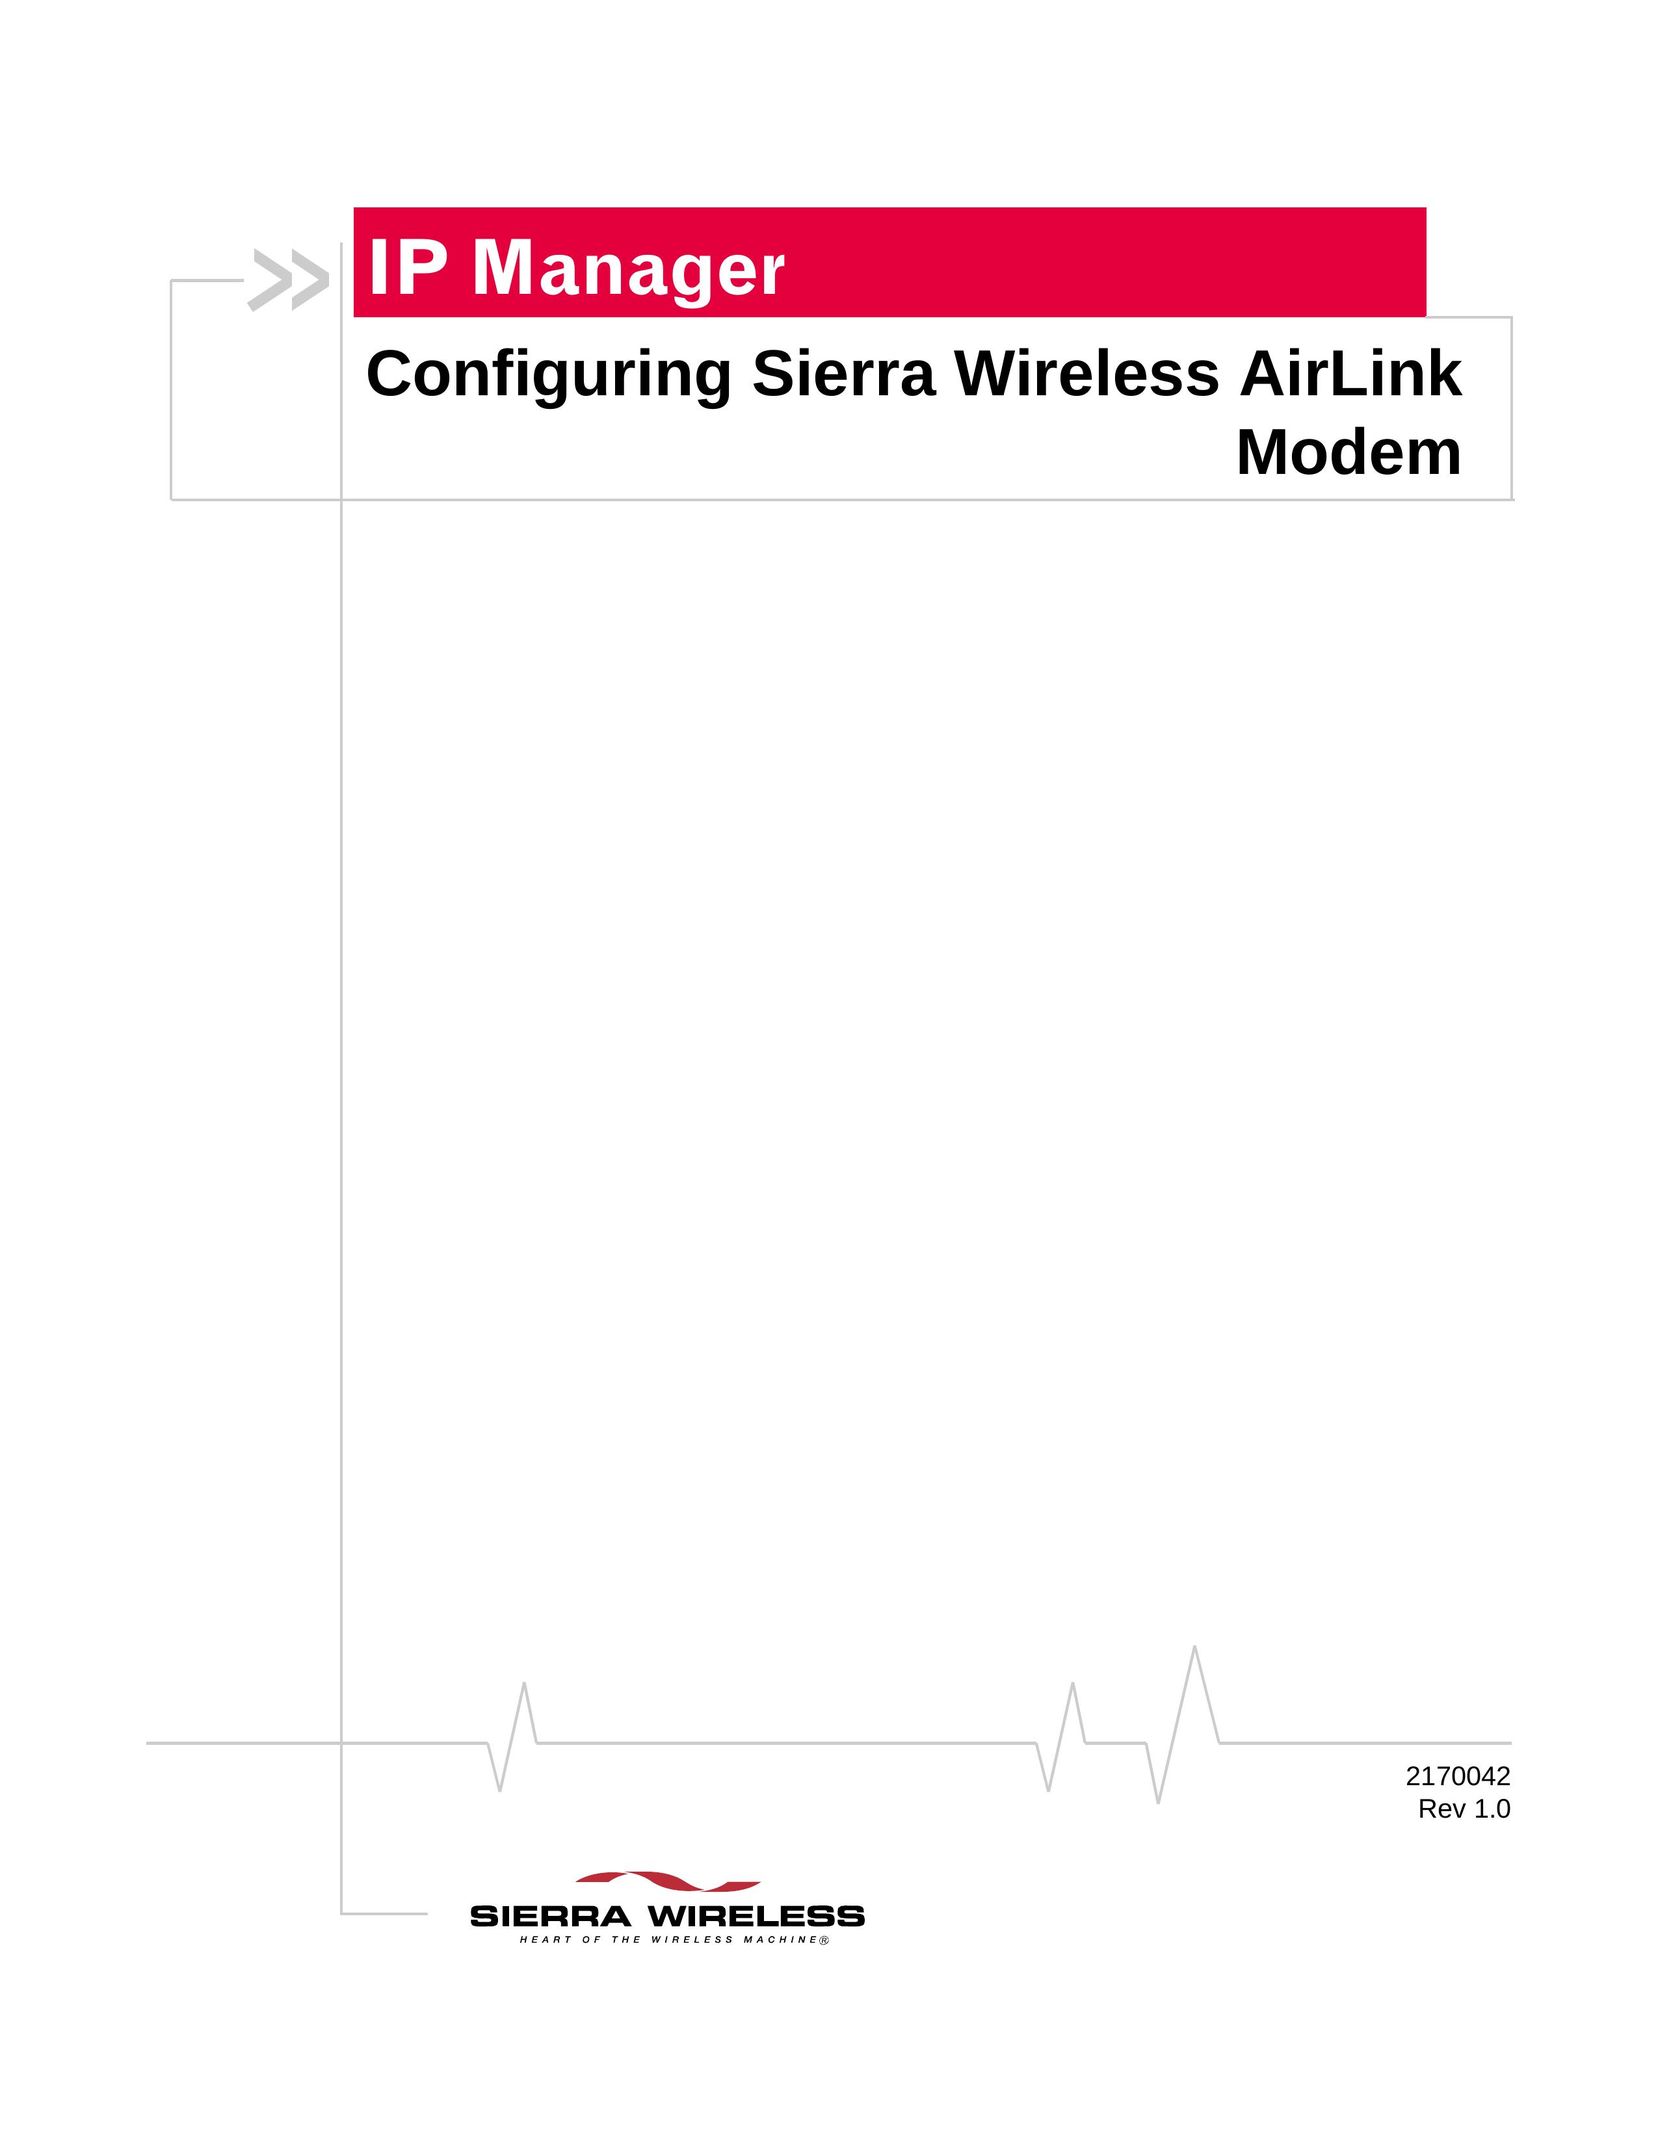 Sierra Wireless 2170042 Modem User Manual